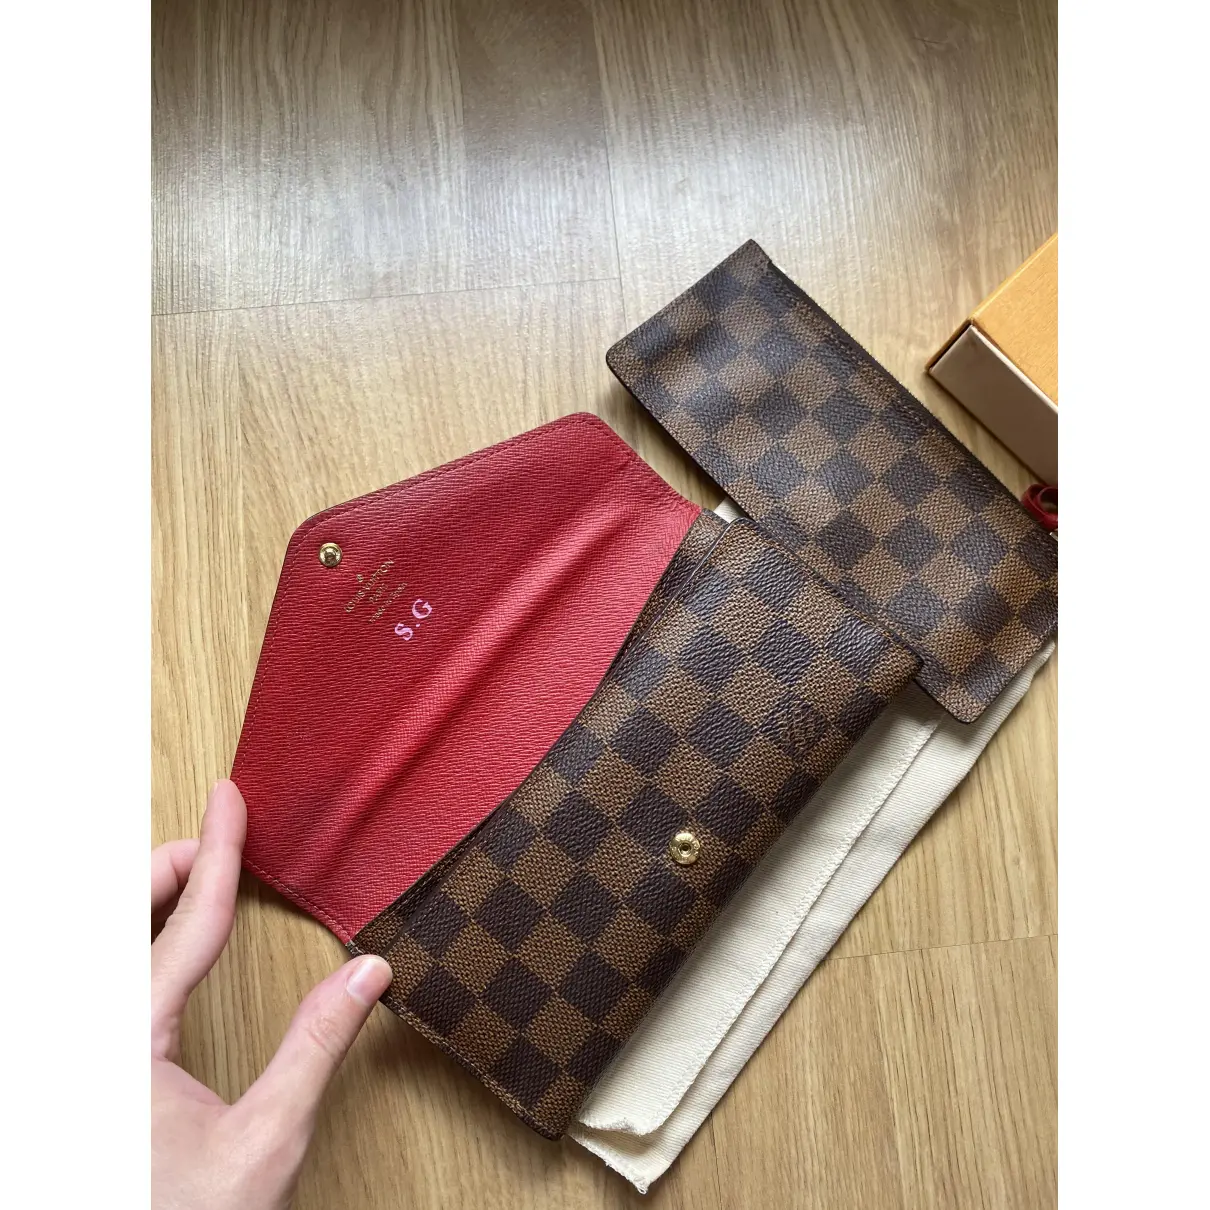 Buy Louis Vuitton Joséphine leather wallet online